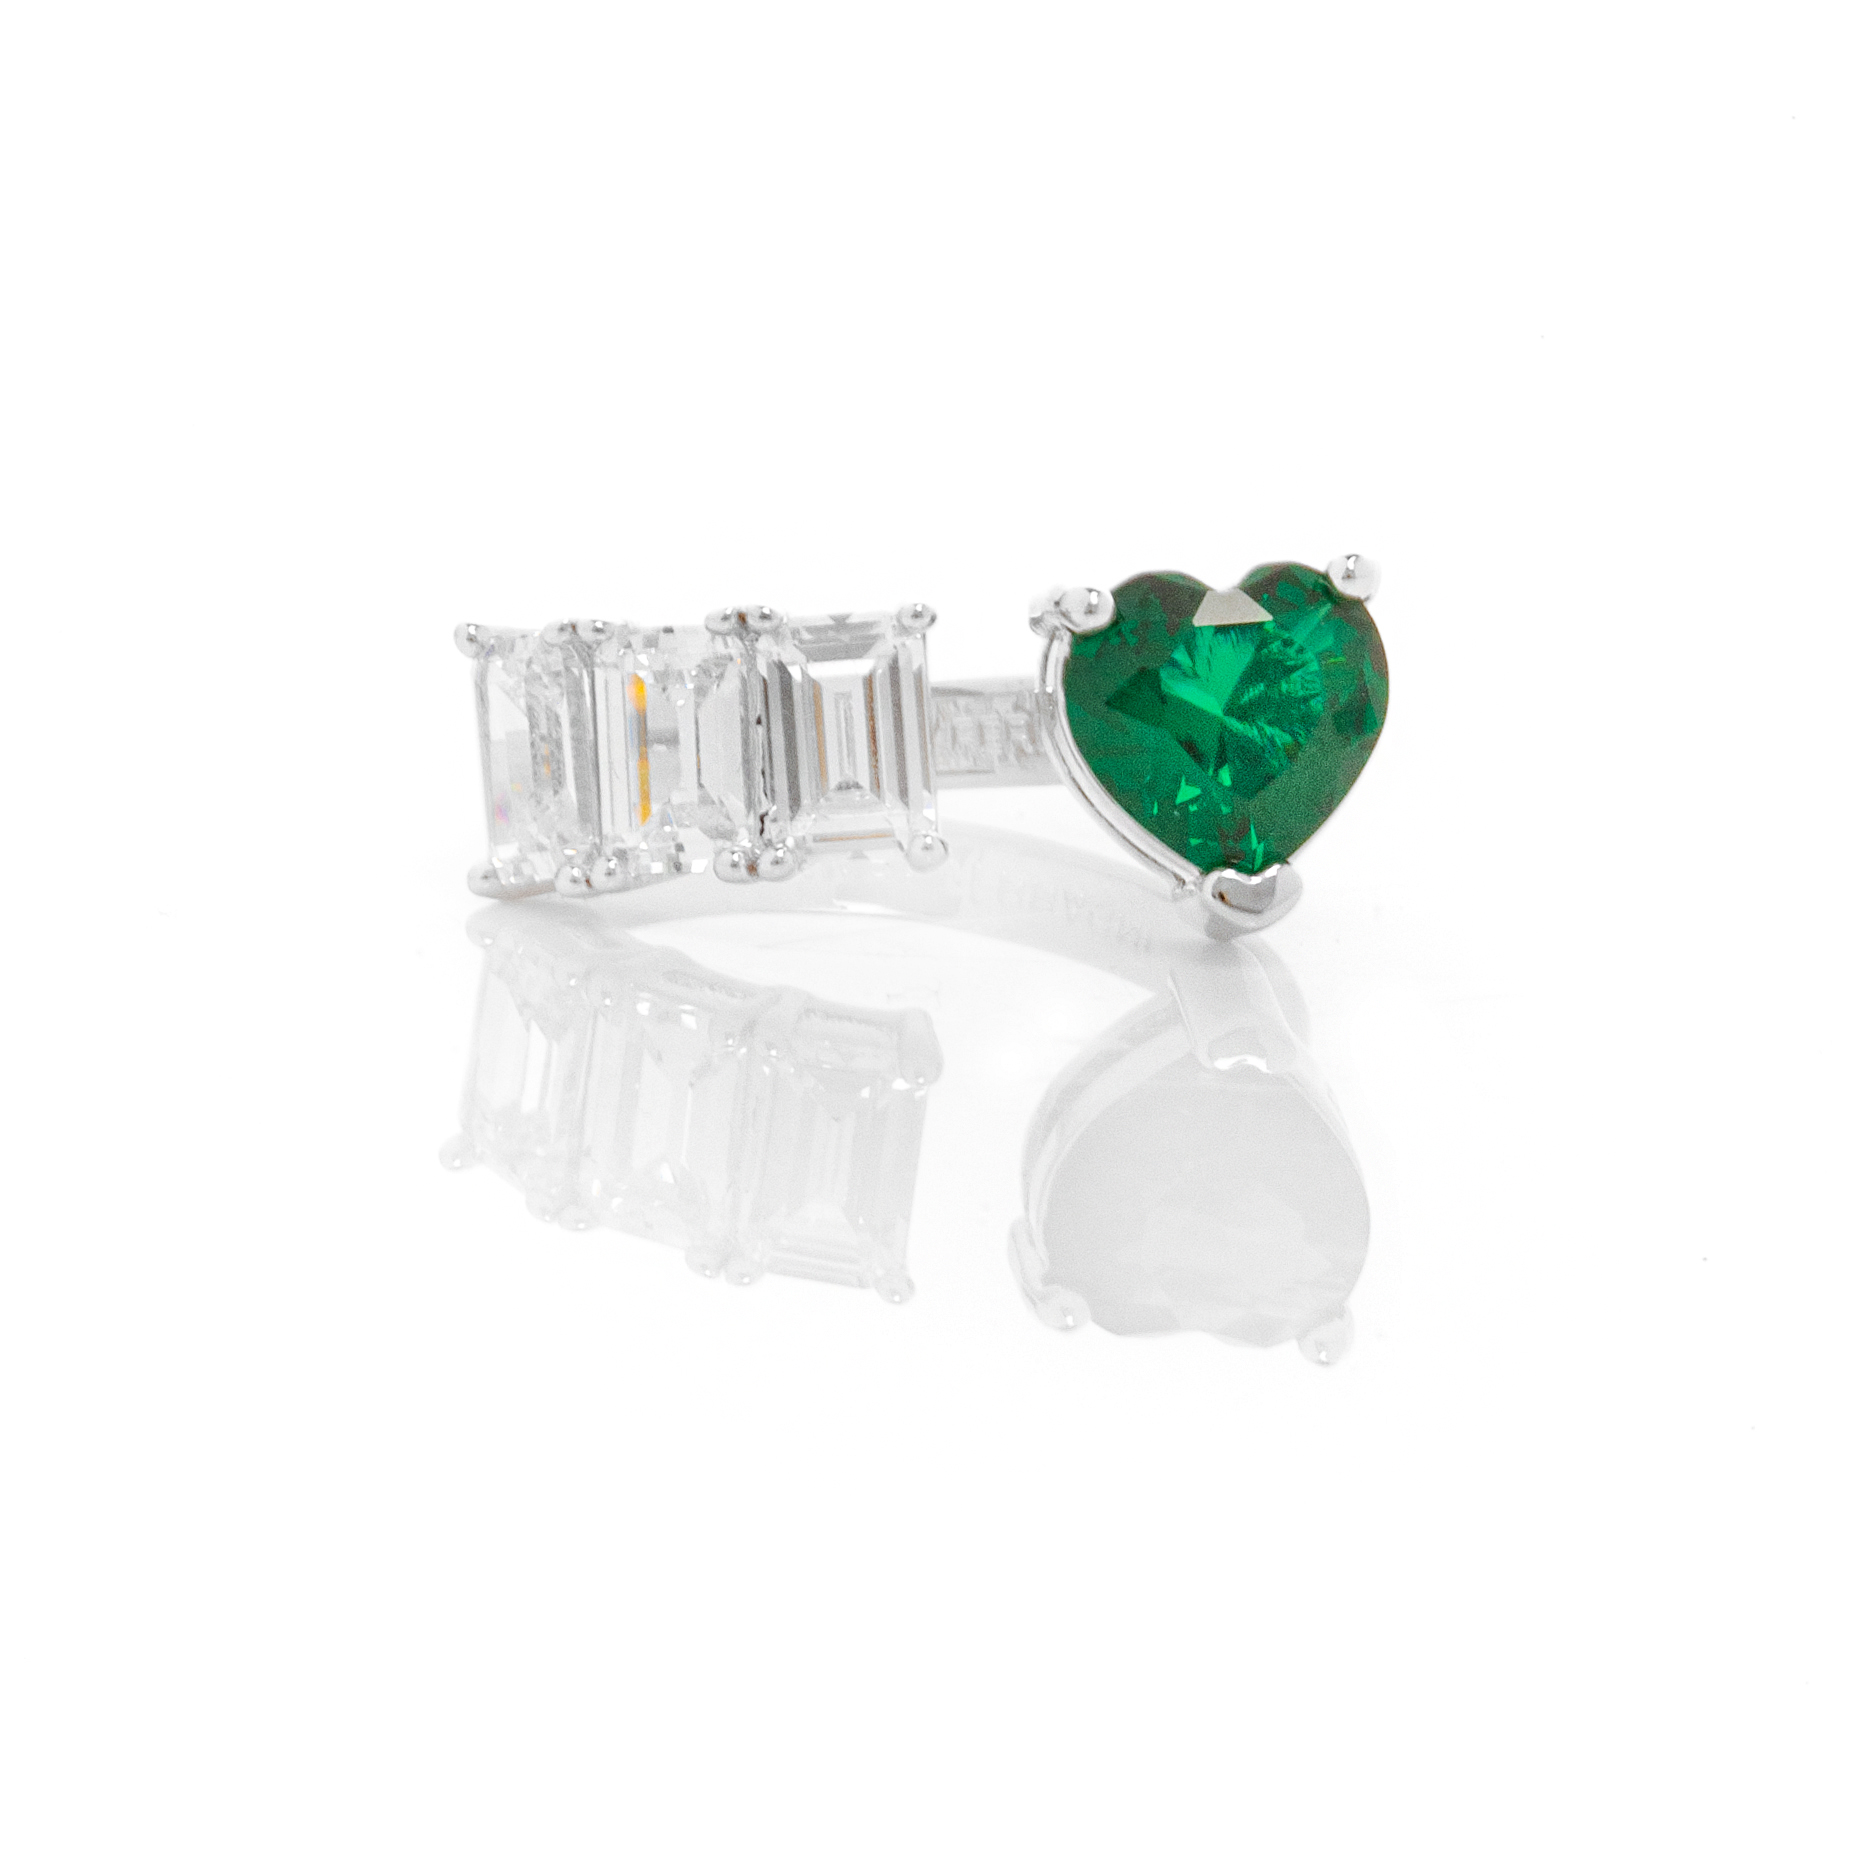 Δαχτυλίδι Chiara Ferragni με Πράσινη Καρδιά και Λευκές Πέτρες